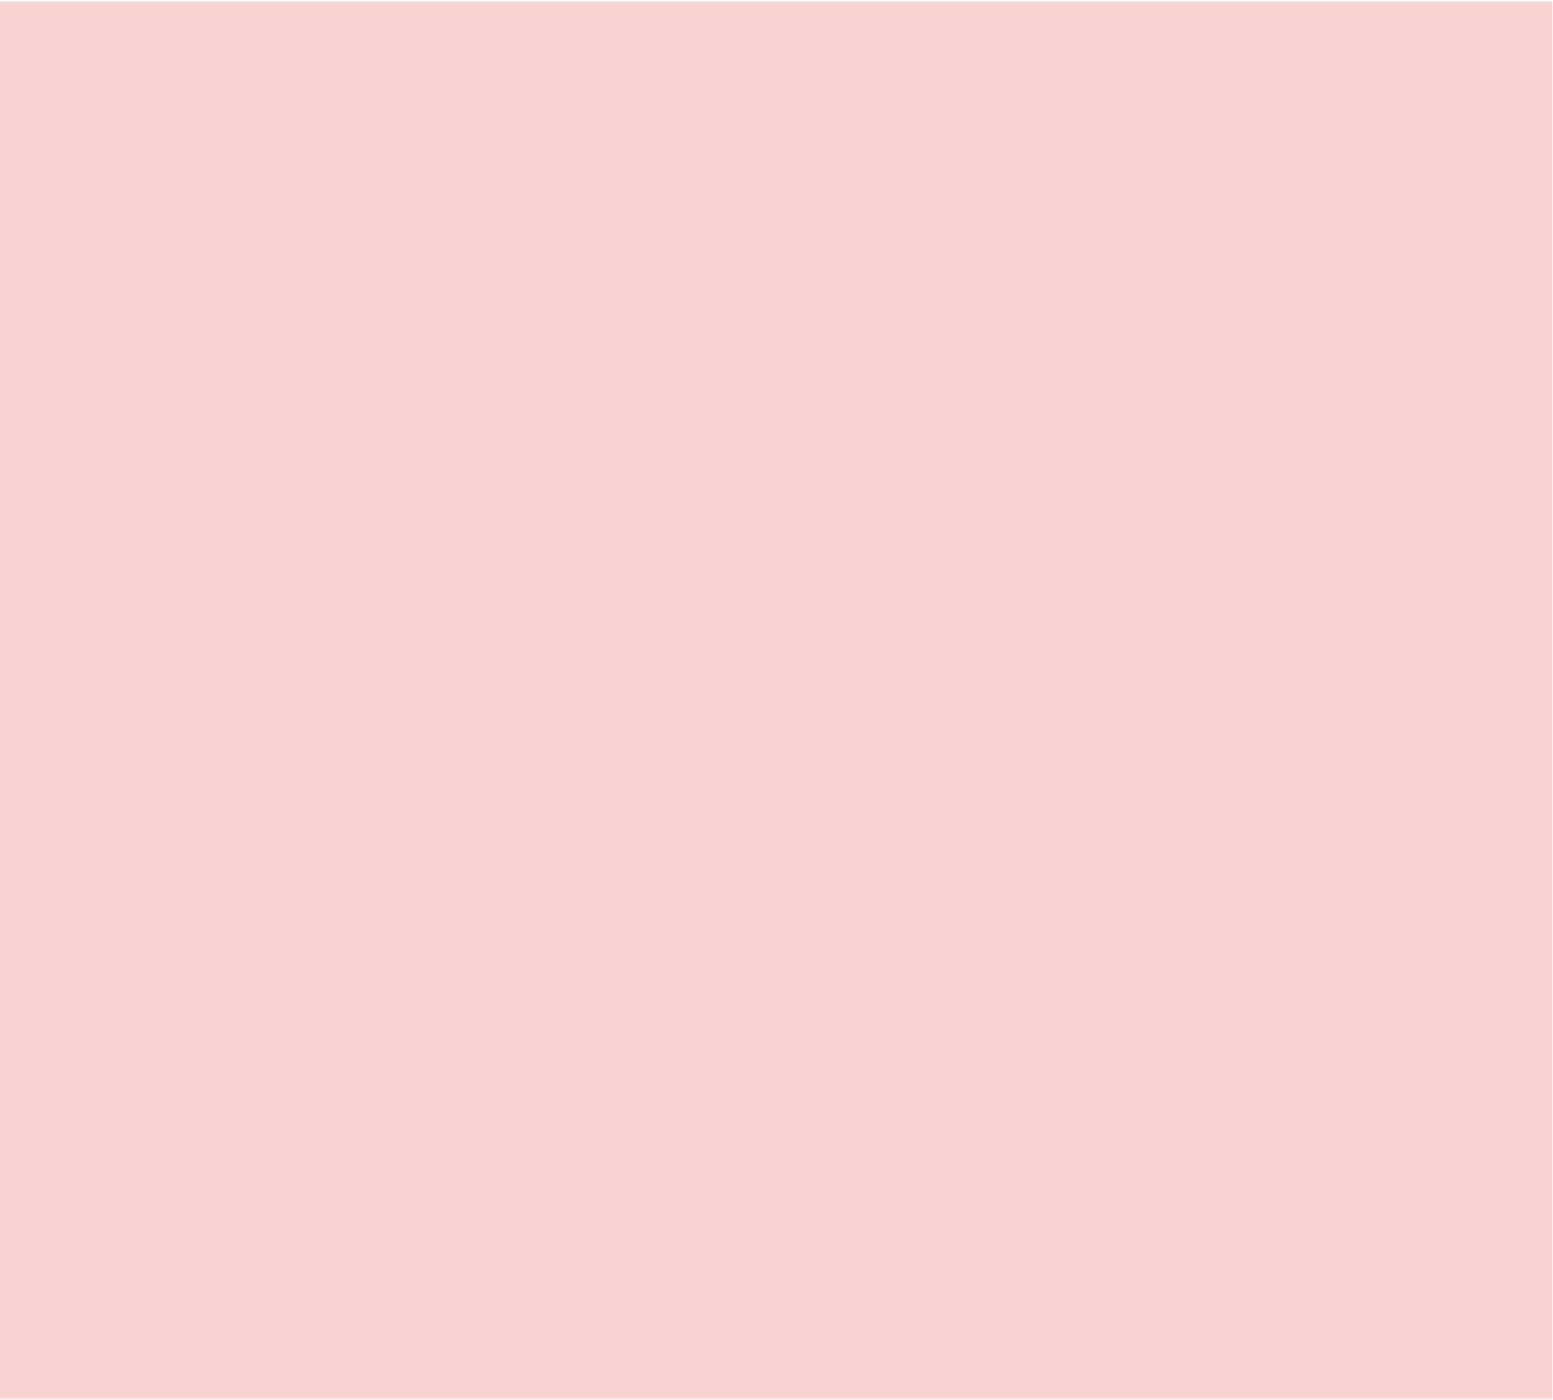 いきのこり●ぼくら歌词 歌手青葉市子-专辑0-单曲《いきのこり●ぼくら》LRC歌词下载